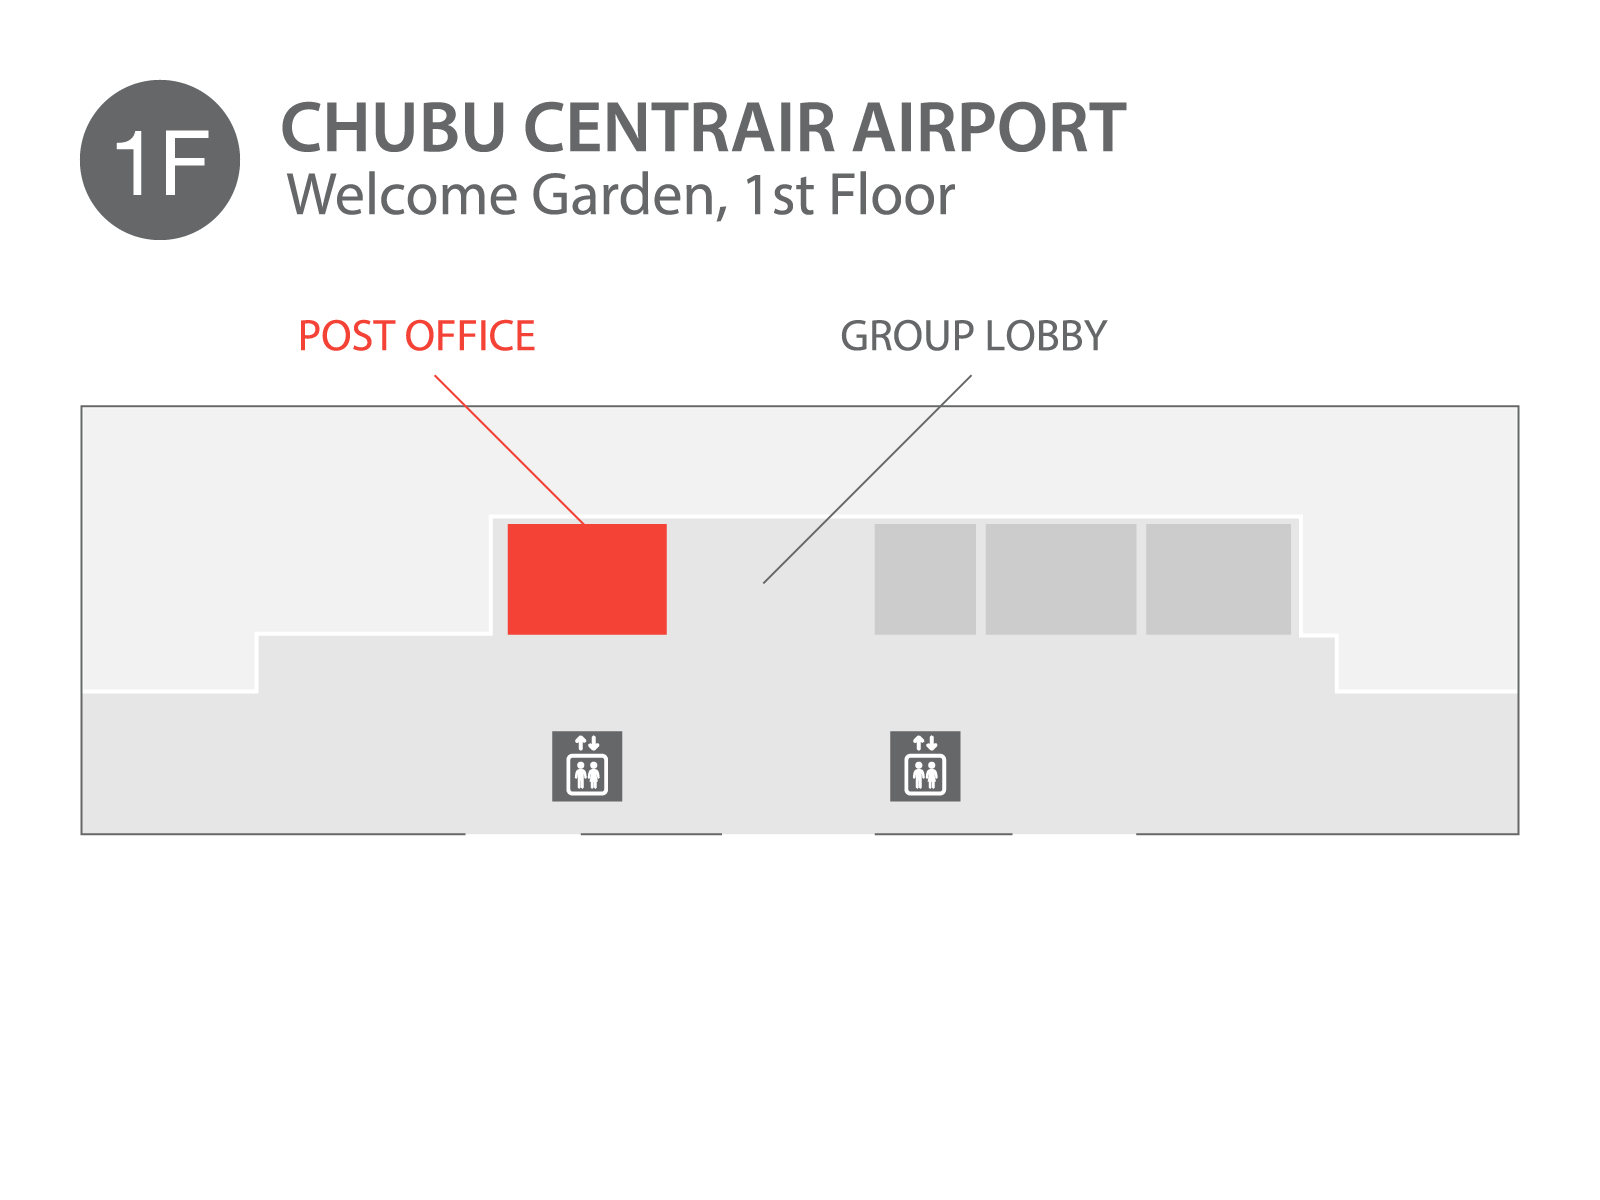 Chubu Centrair Airport - Chubu Centrair airport located on 1st floor.